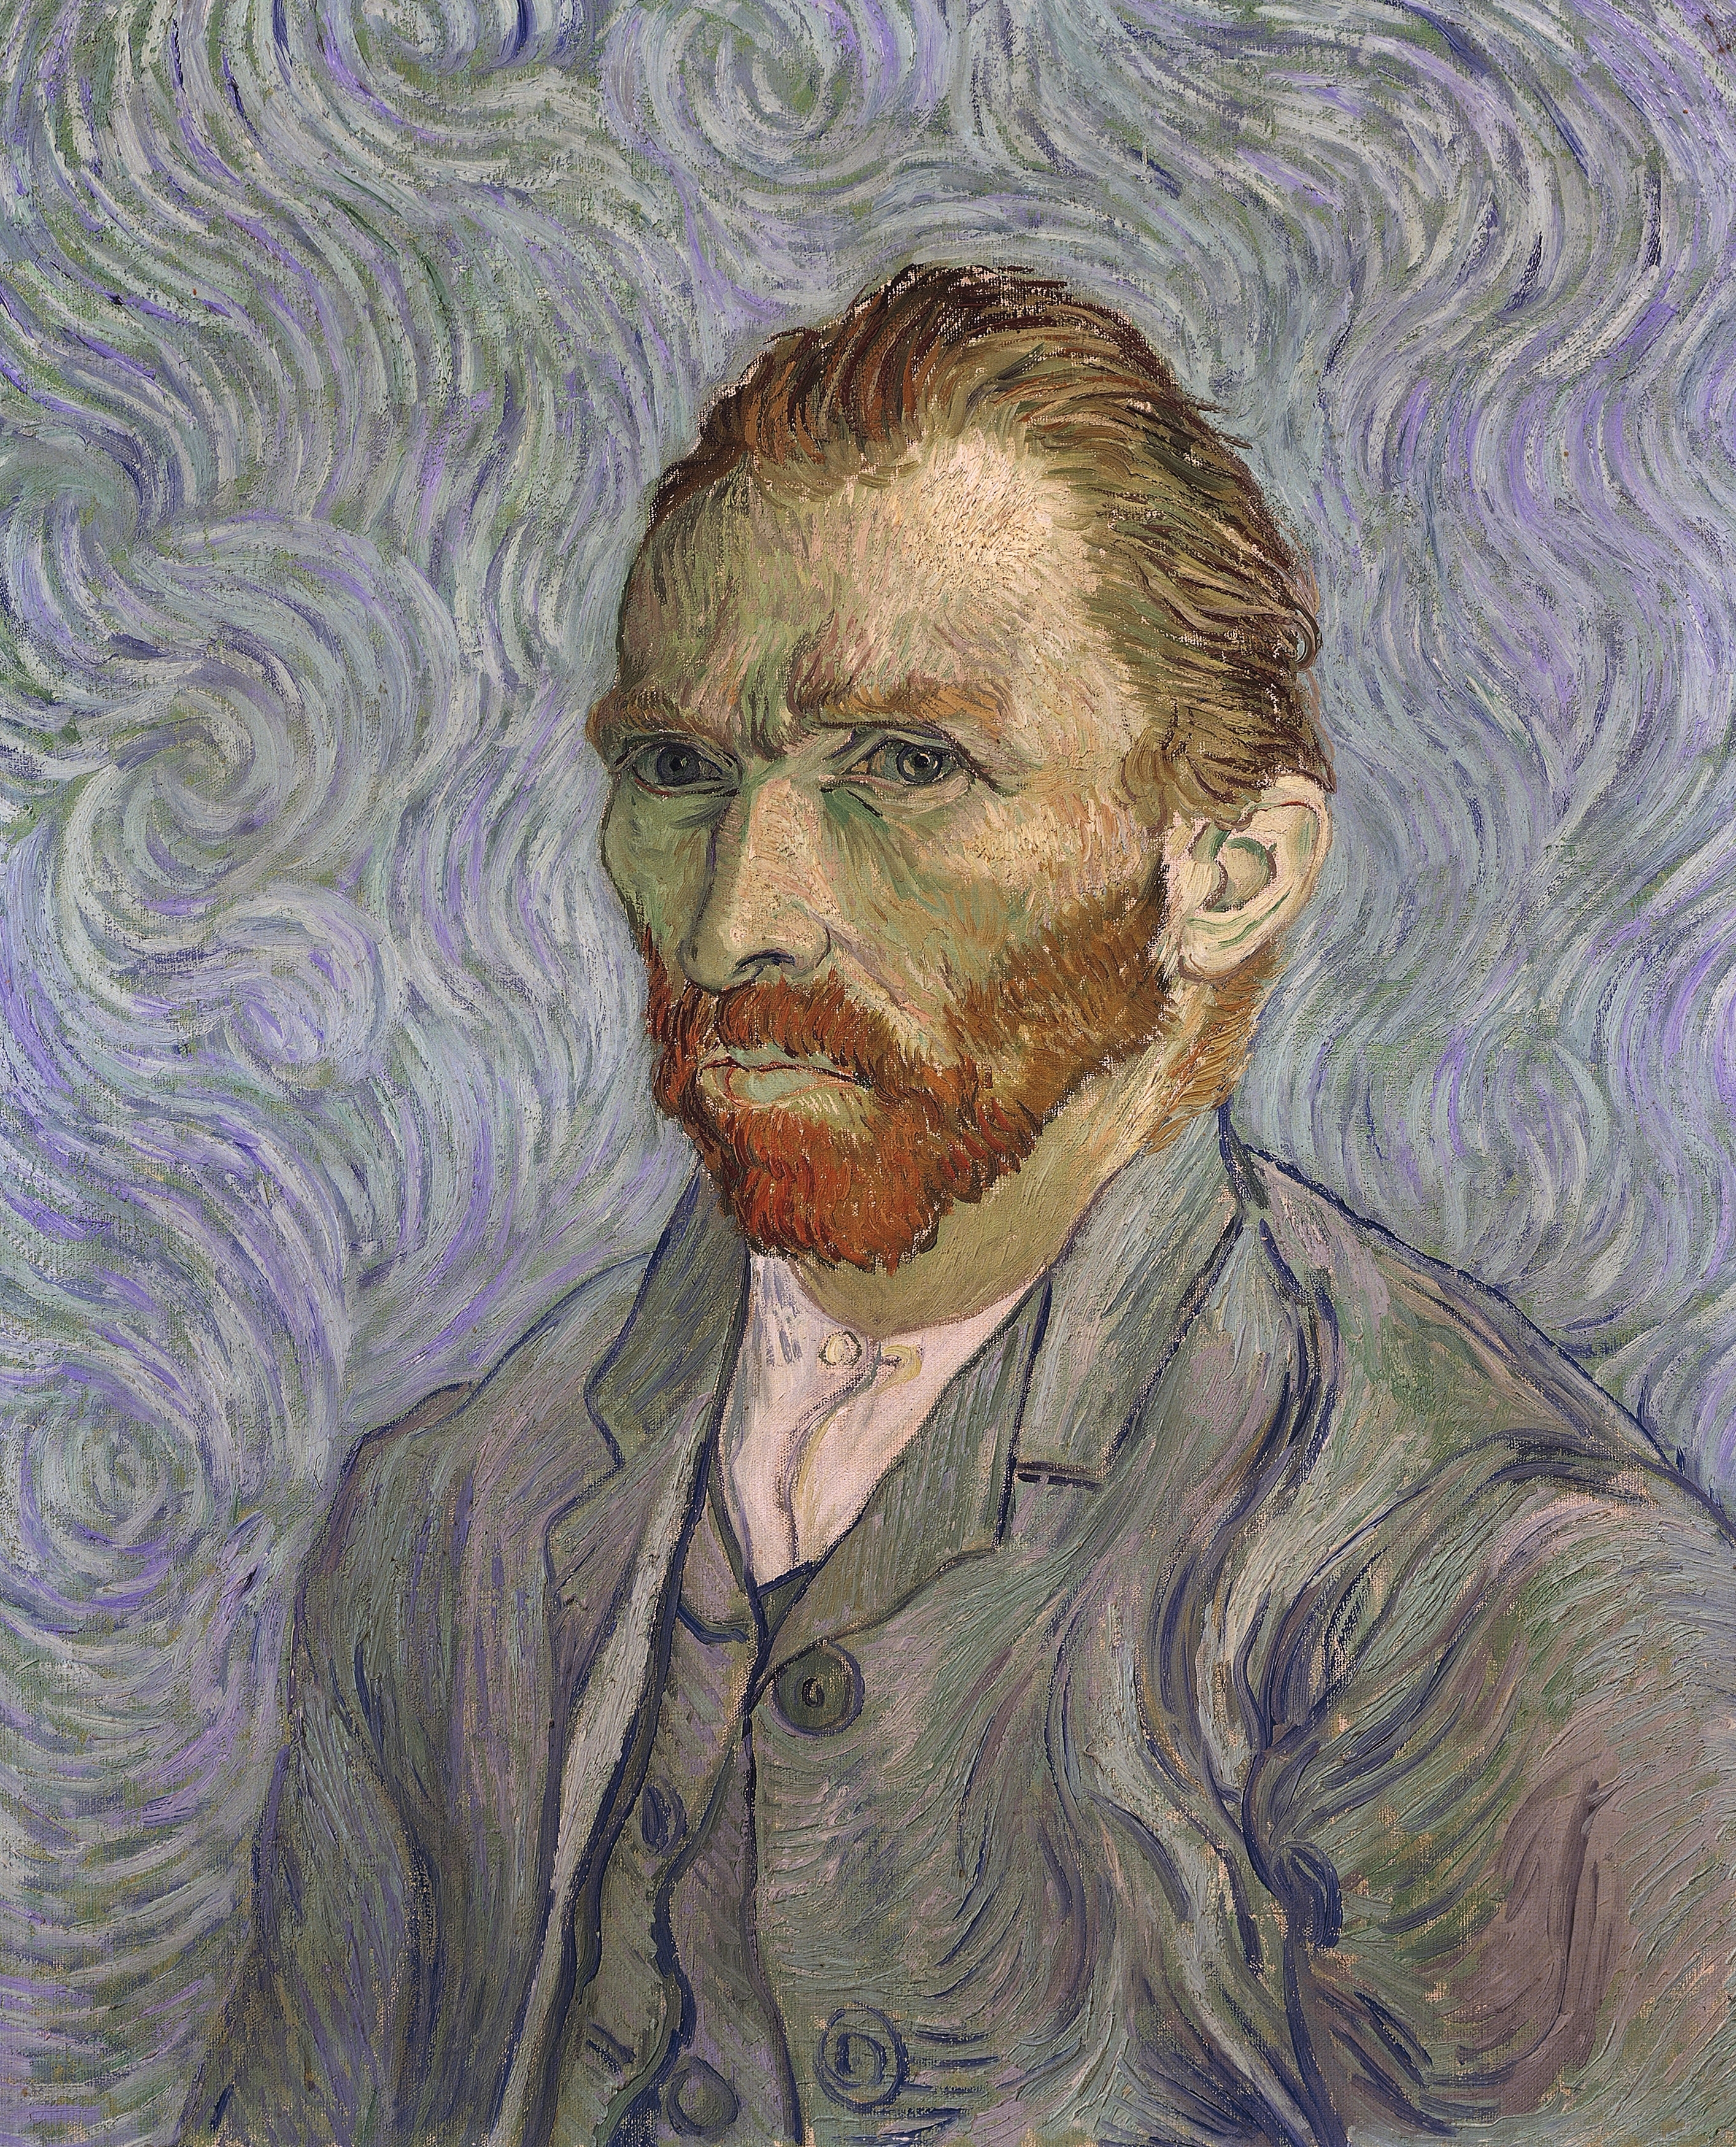 Self-Portrait, 1889, by Vincent Van Gogh (1853-1890).